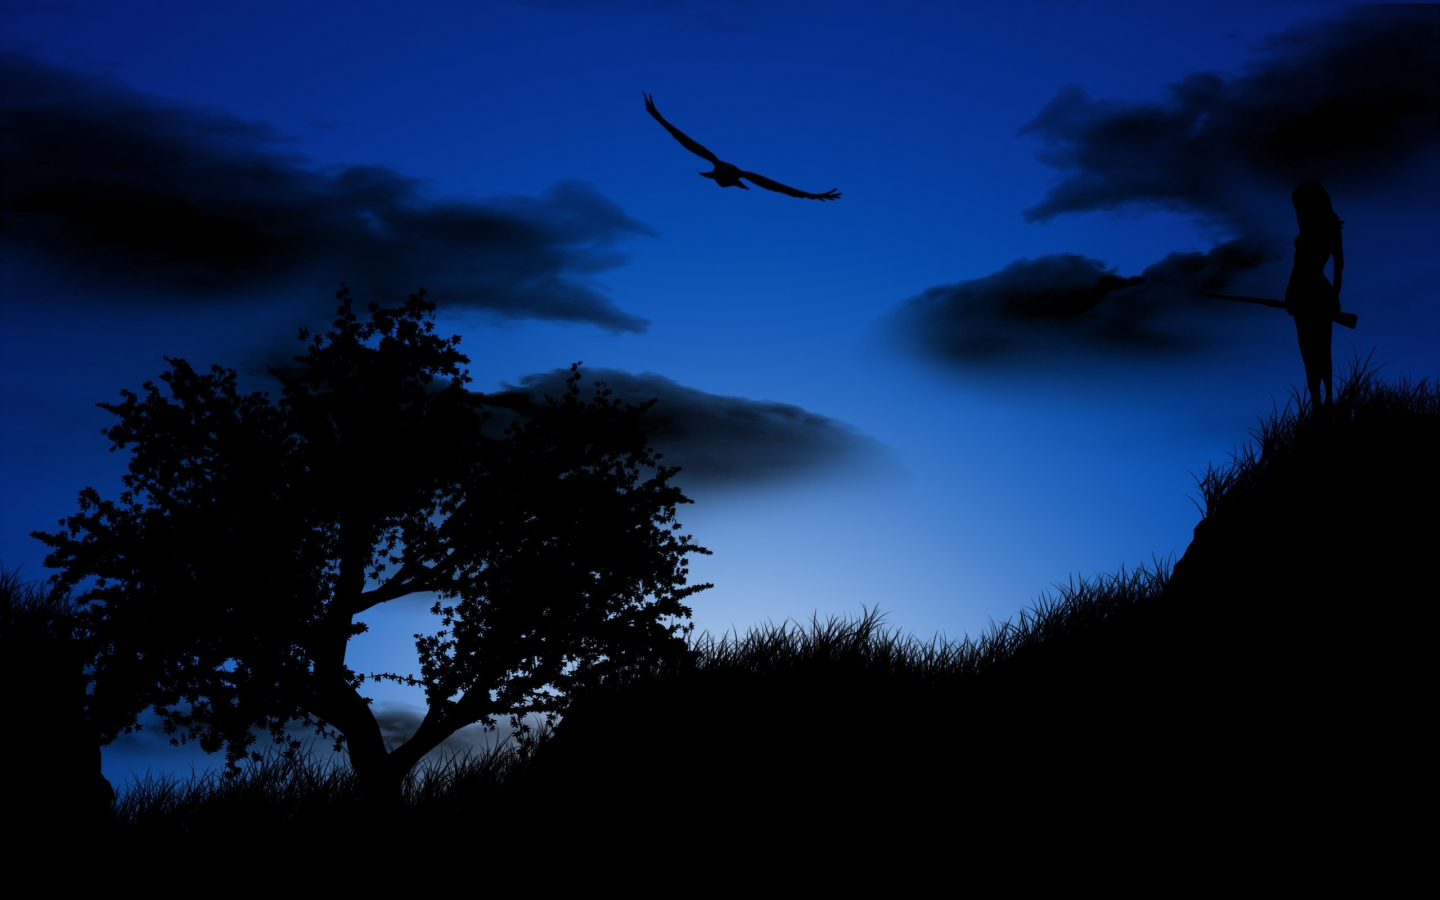 арт, фотошоп, ночь, деревья, птица, девушка, синие